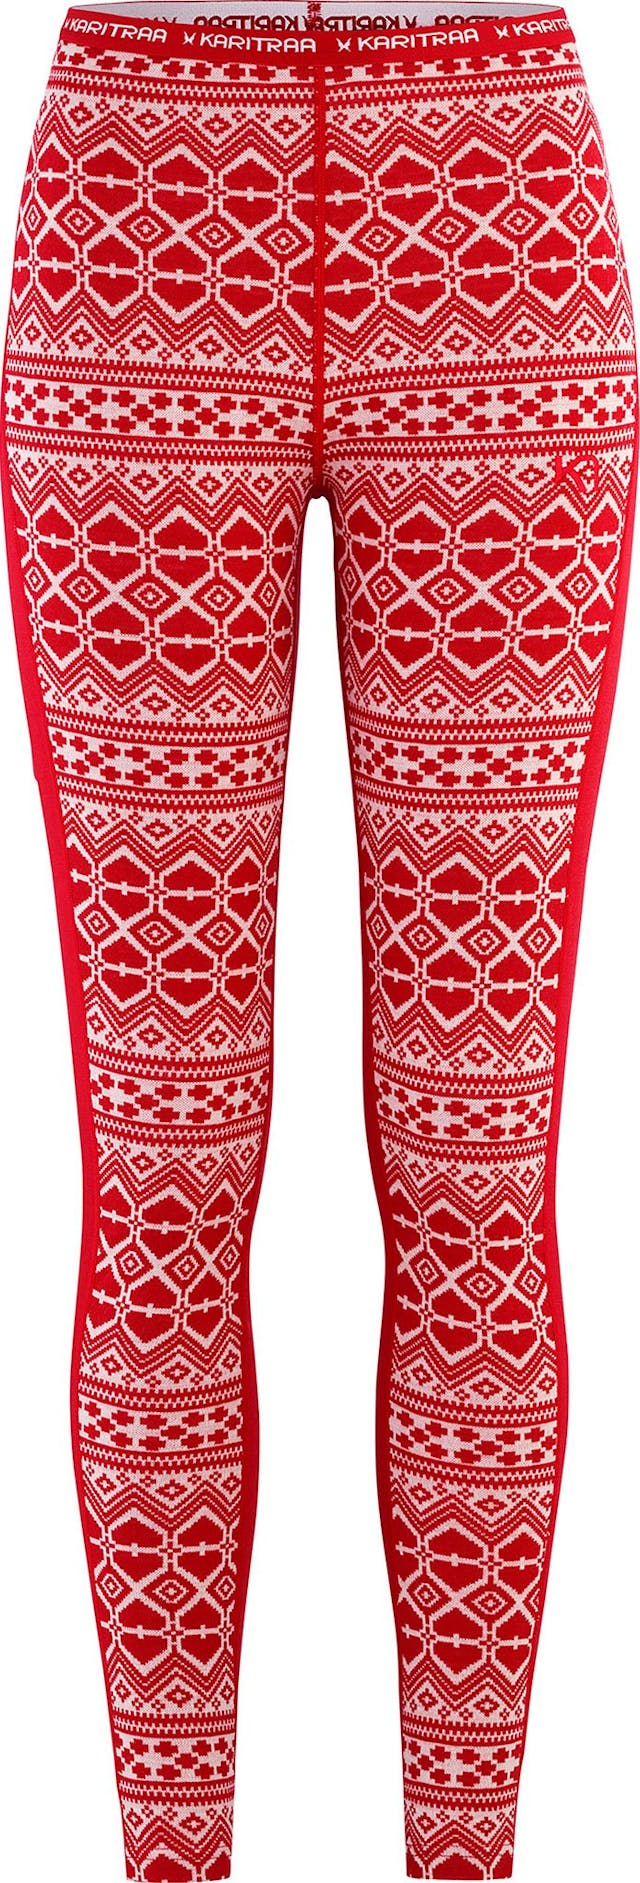 Product image for Hjerte Baselayer Legging - Women's